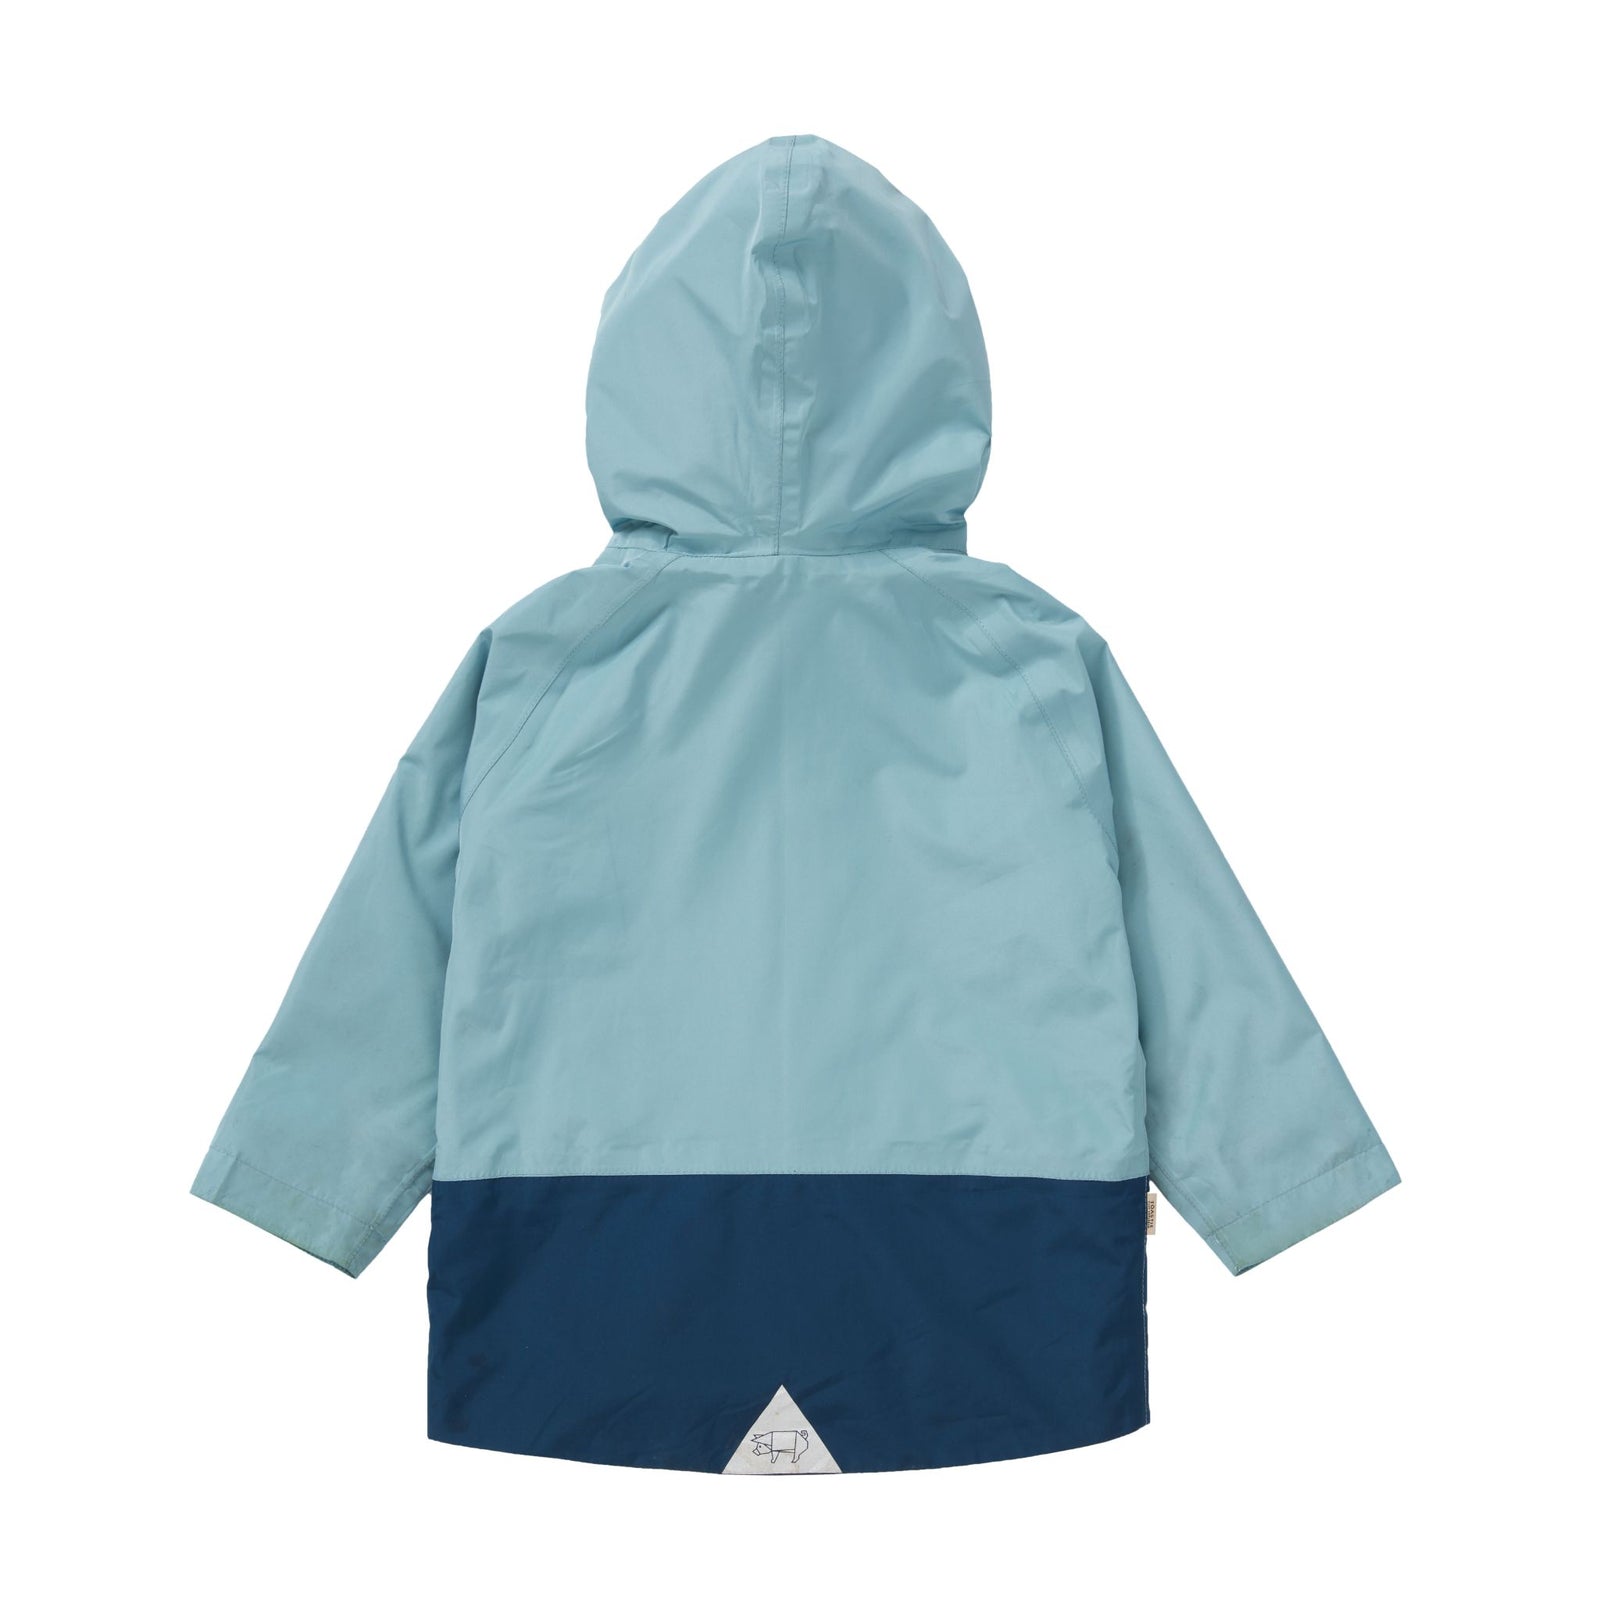 Naval Blue Pac-a-Mac Waterproof Raincoat